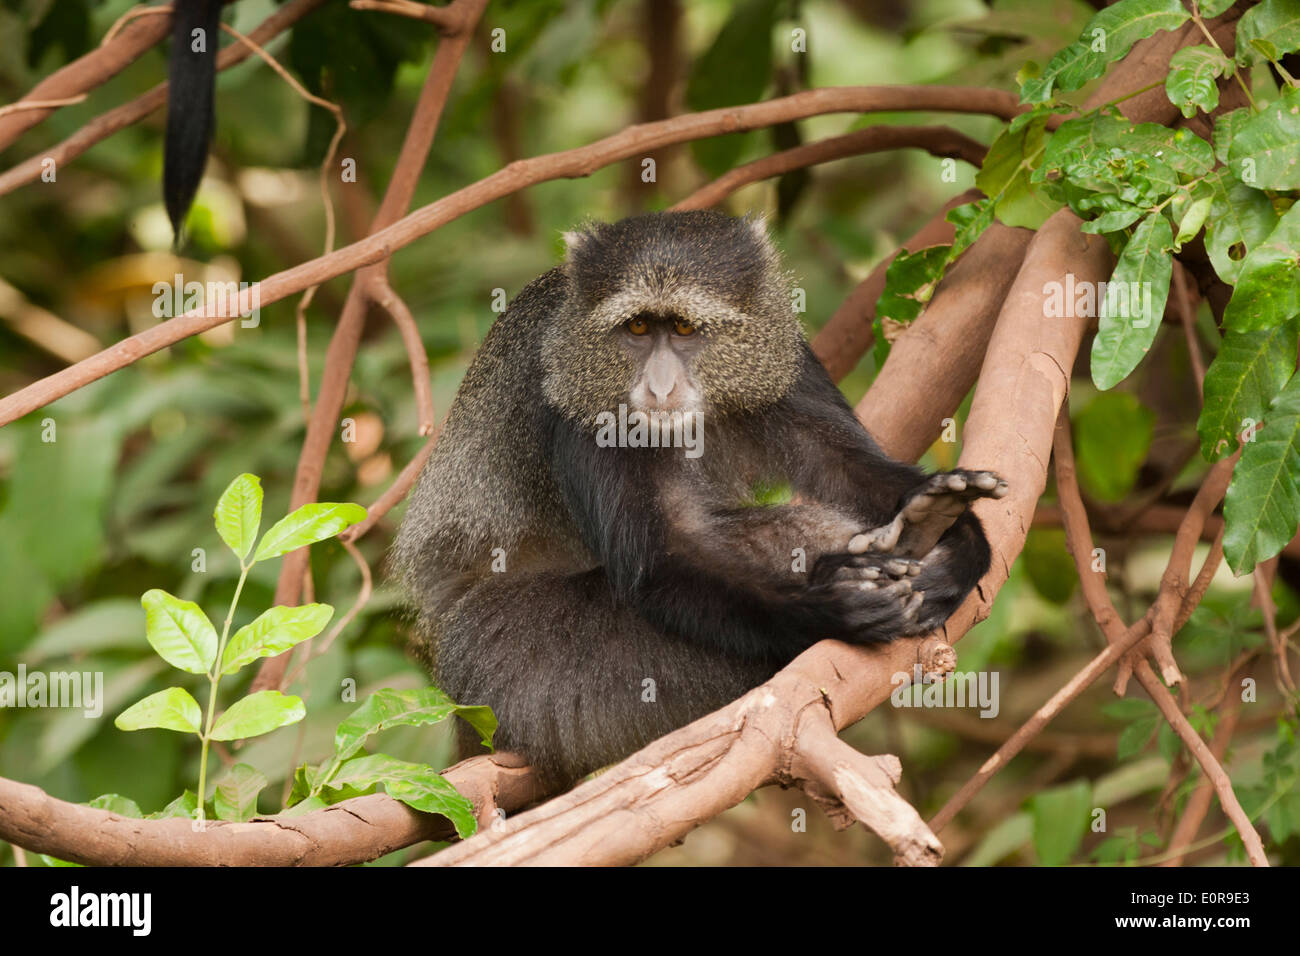 Blue Monkey, o samango monkey, (Cercopithecus mitis) Foto Stock